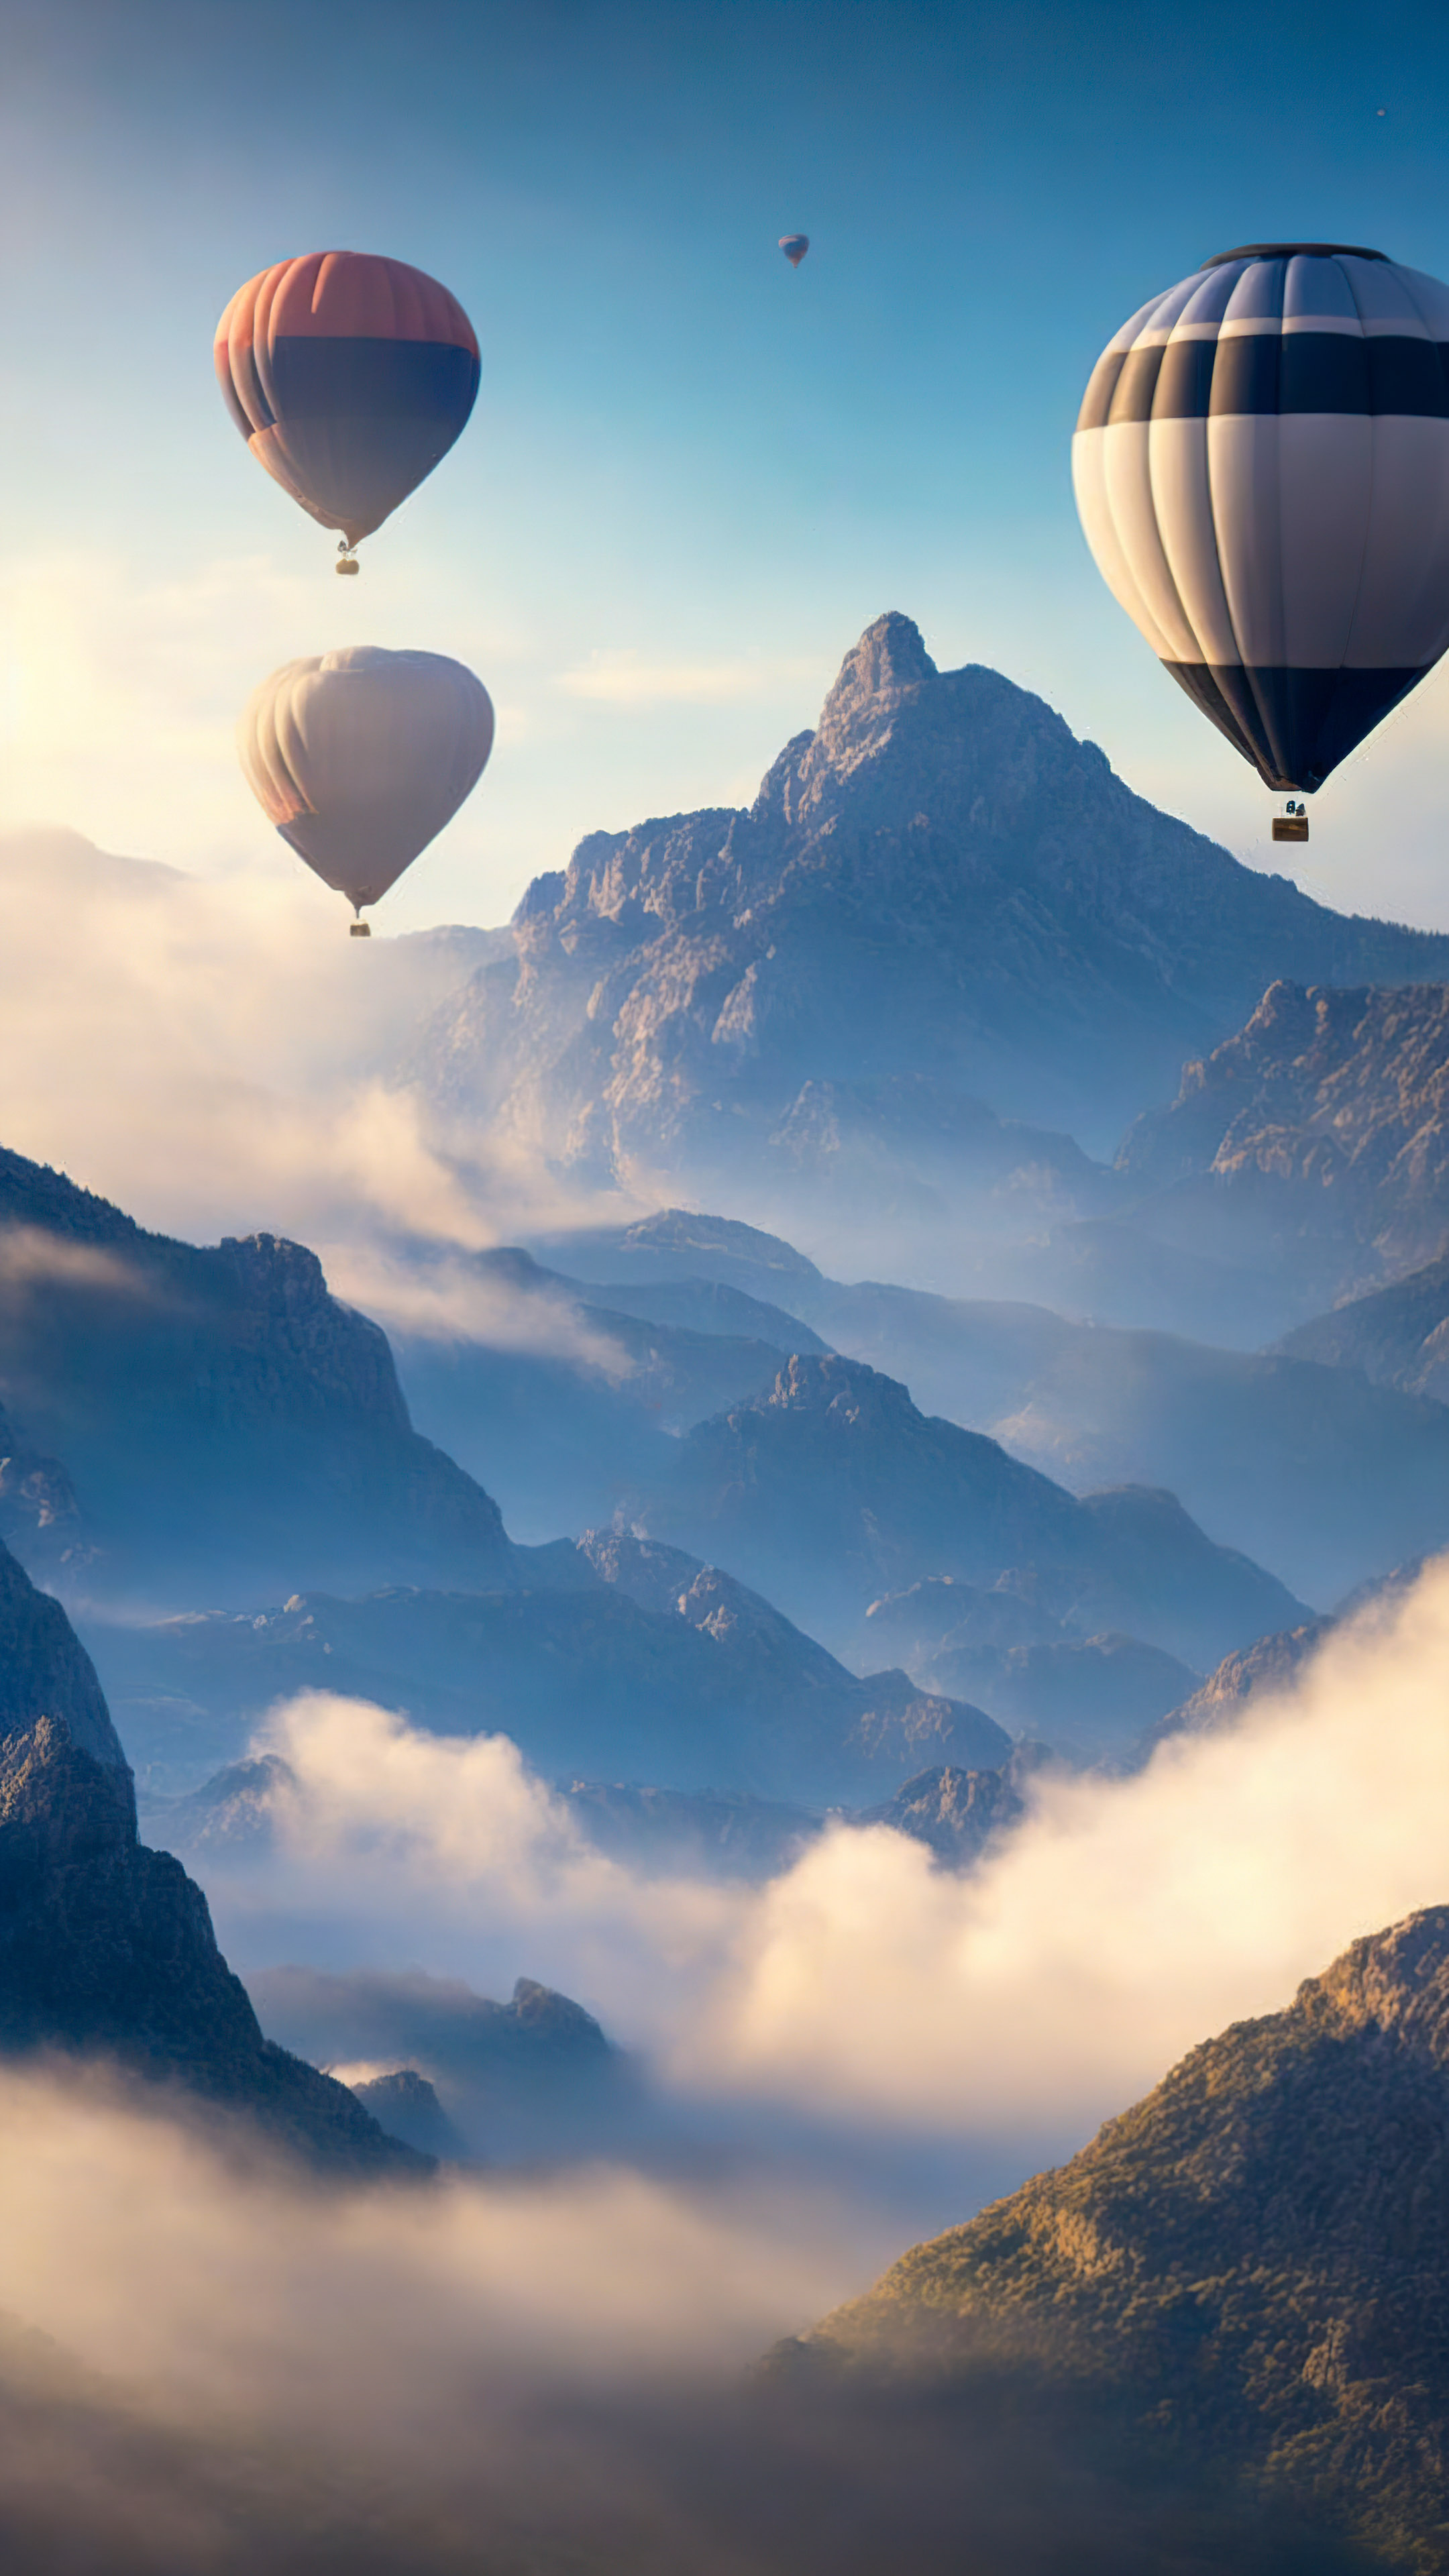 Obtenez une perspective surréaliste avec notre fond d'écran de paysage pour iPhone, dépeignant un ciel rempli de montgolfières flottant paisiblement au-dessus d'un paysage montagneux brumeux.